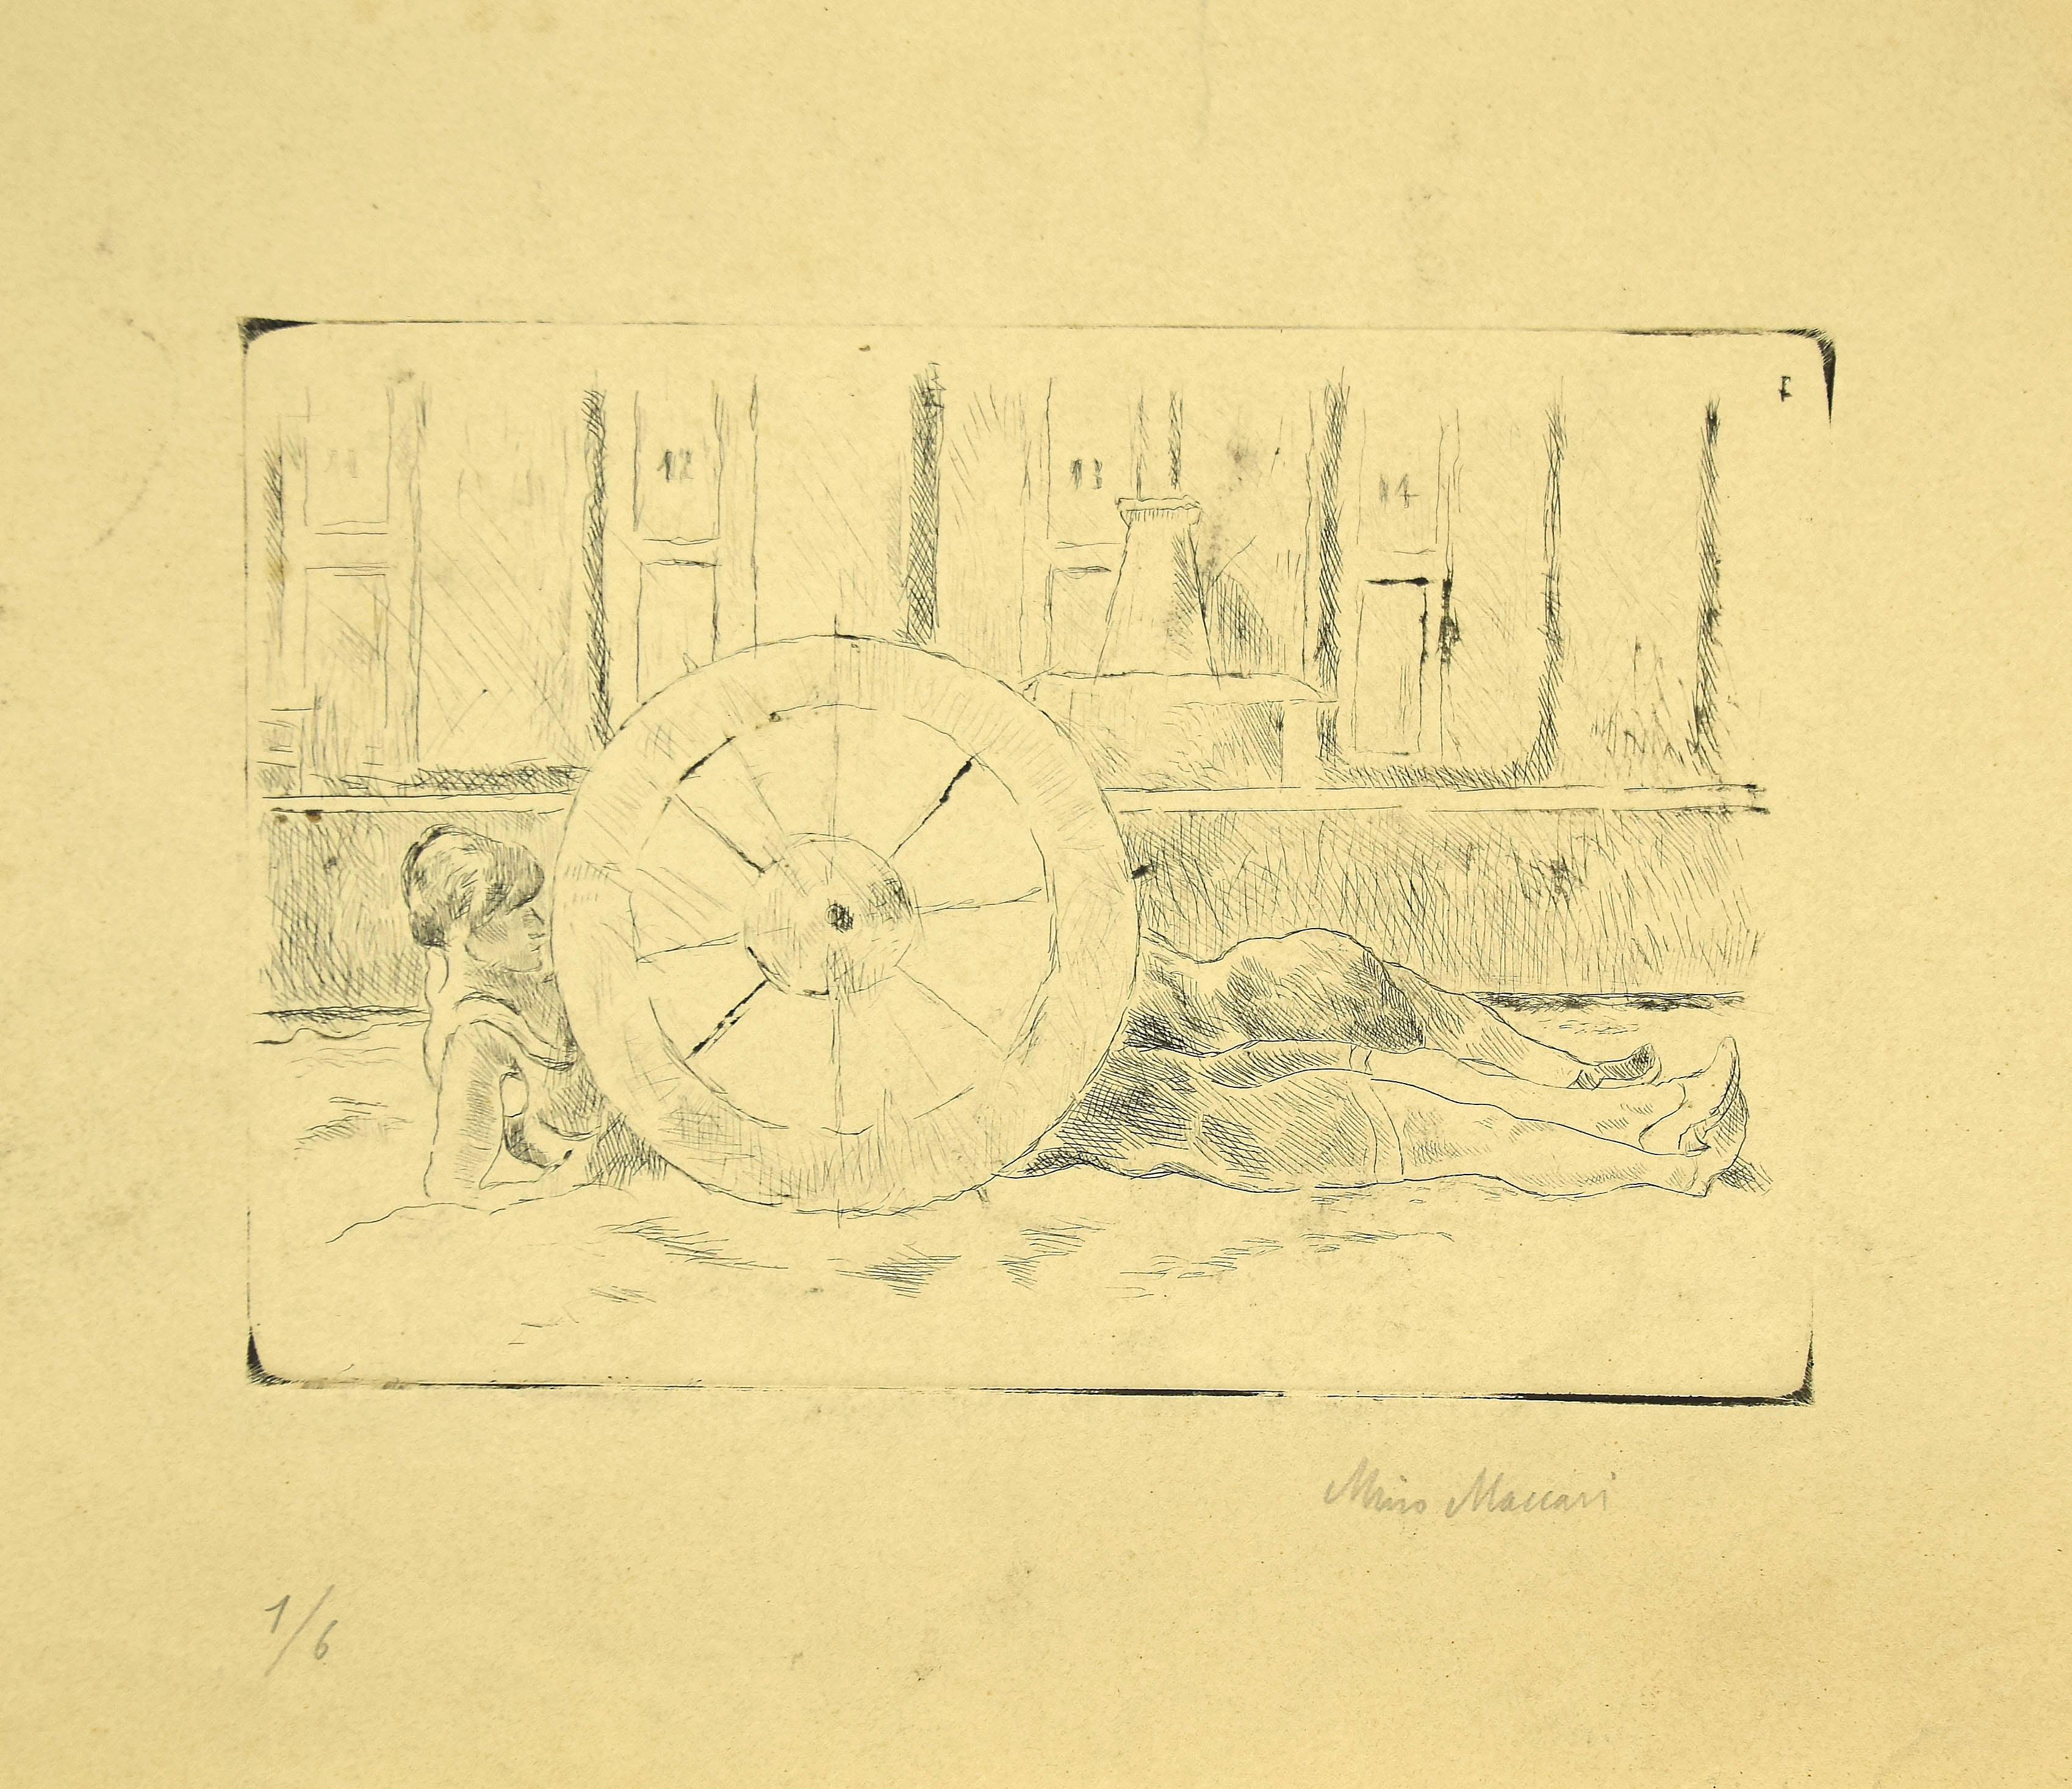 La roue est une œuvre d'art moderne originale réalisée dans la première moitié du XXe siècle par l'artiste italien Mino Maccari (Sienne, 1898 - Rome, 1989).

Pointe sèche originale sur papier. Edition de 6 tirages.

Signé à la main au crayon par